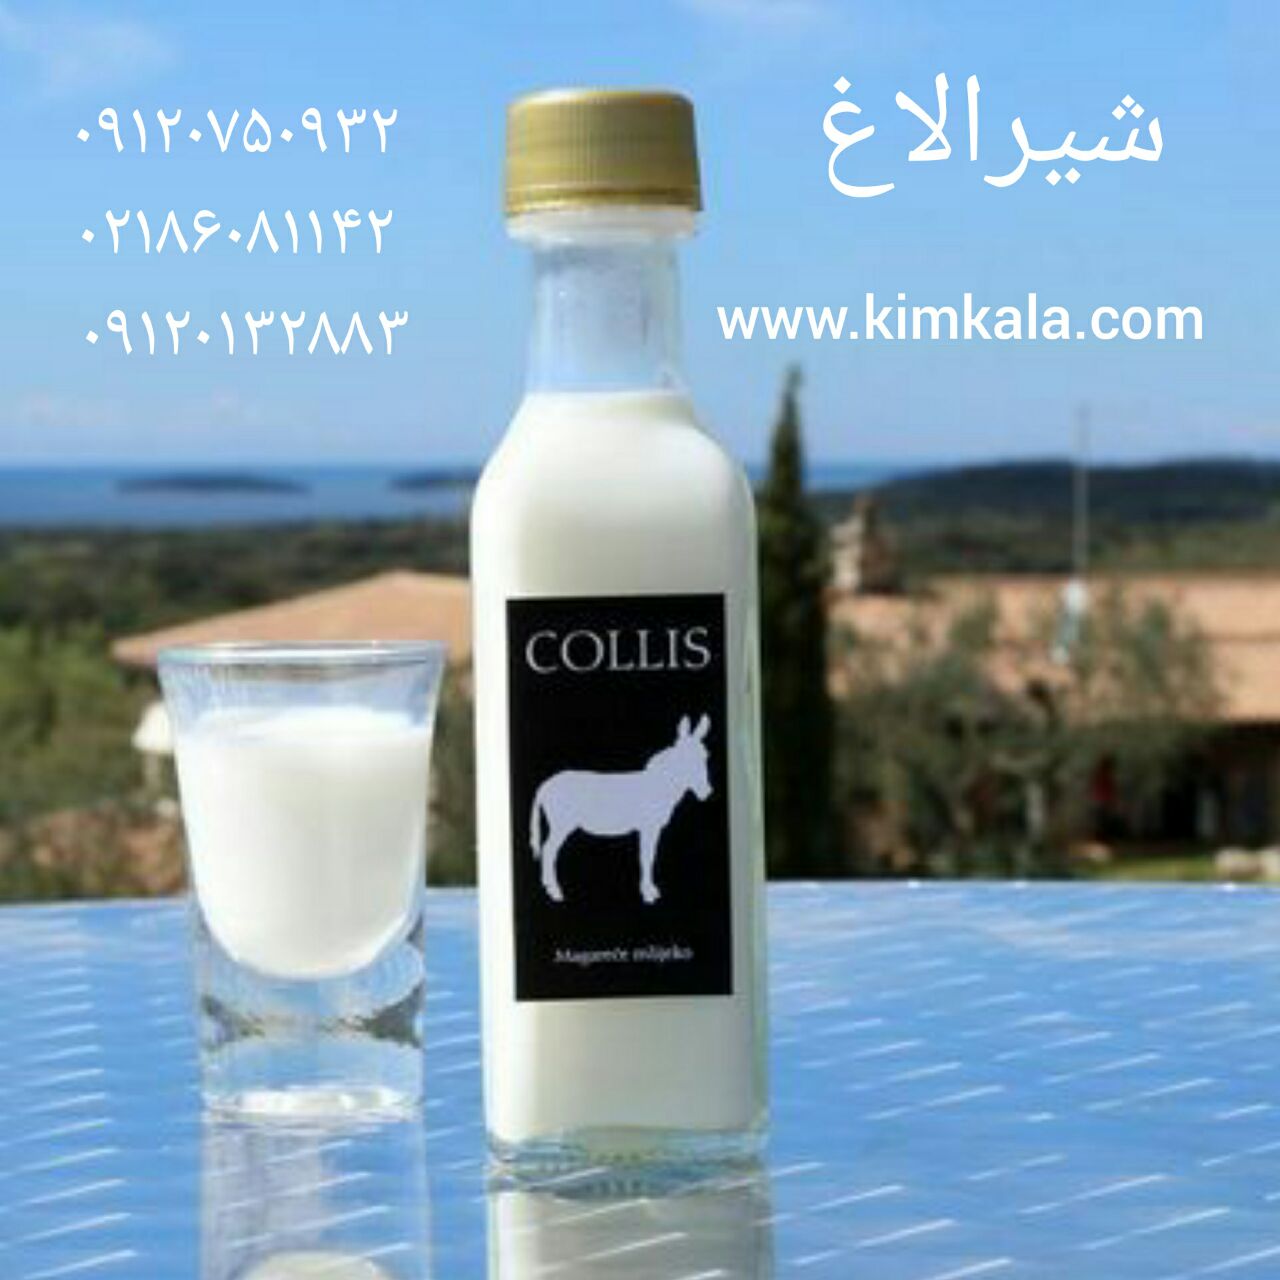 قیمت شیر الاغ 09120132883 شیرالاغ با ضمانت اصل بودن